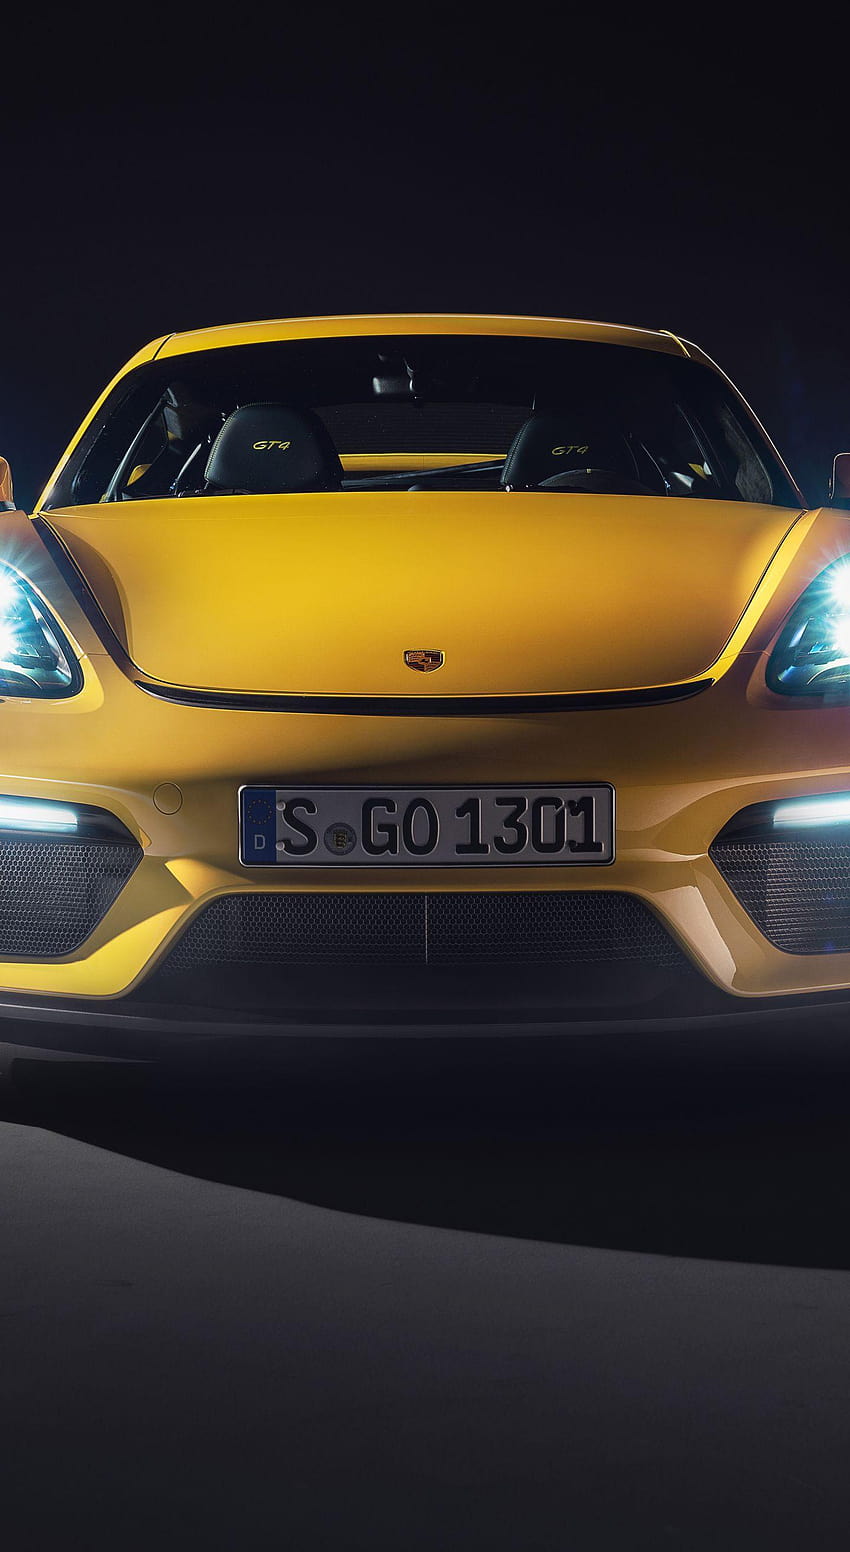 ボード「Cars, 2019 yellow porsche 718 cayman gt4 sports car」のピン HD電話の壁紙